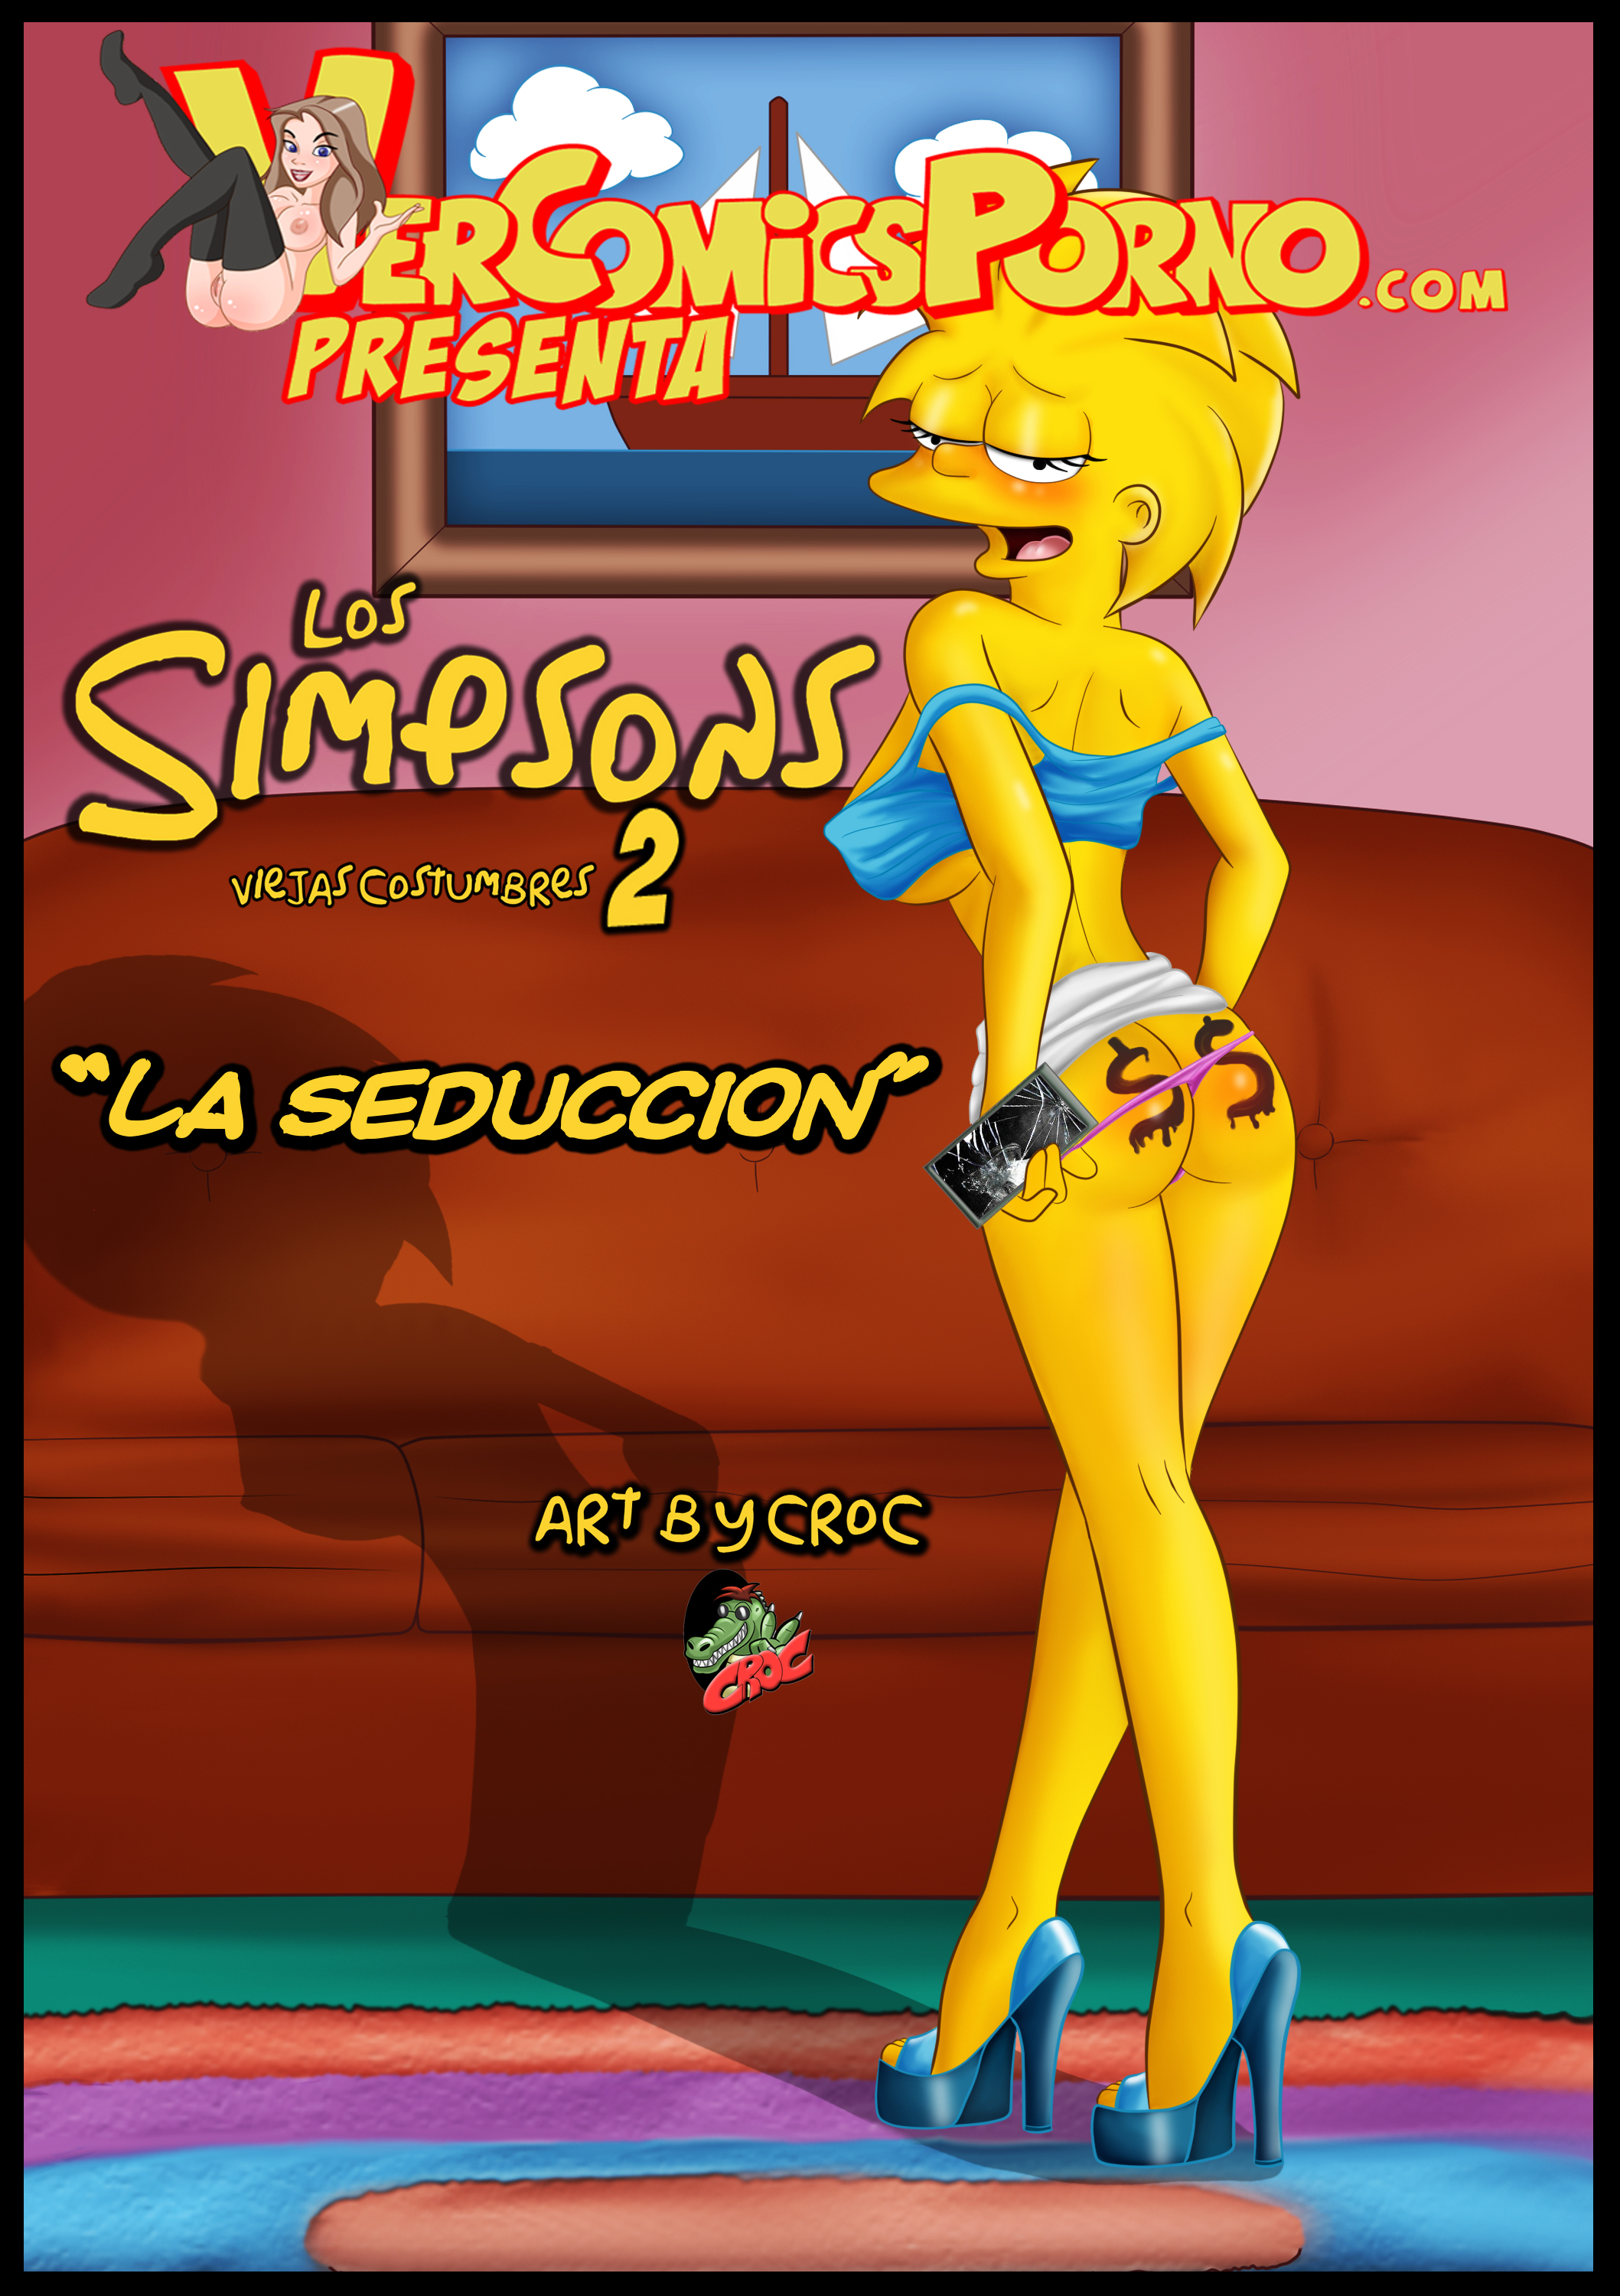 CROC Los Simpsons Viejas Costumbres 2 La Seduccion The Simpsons English julle00